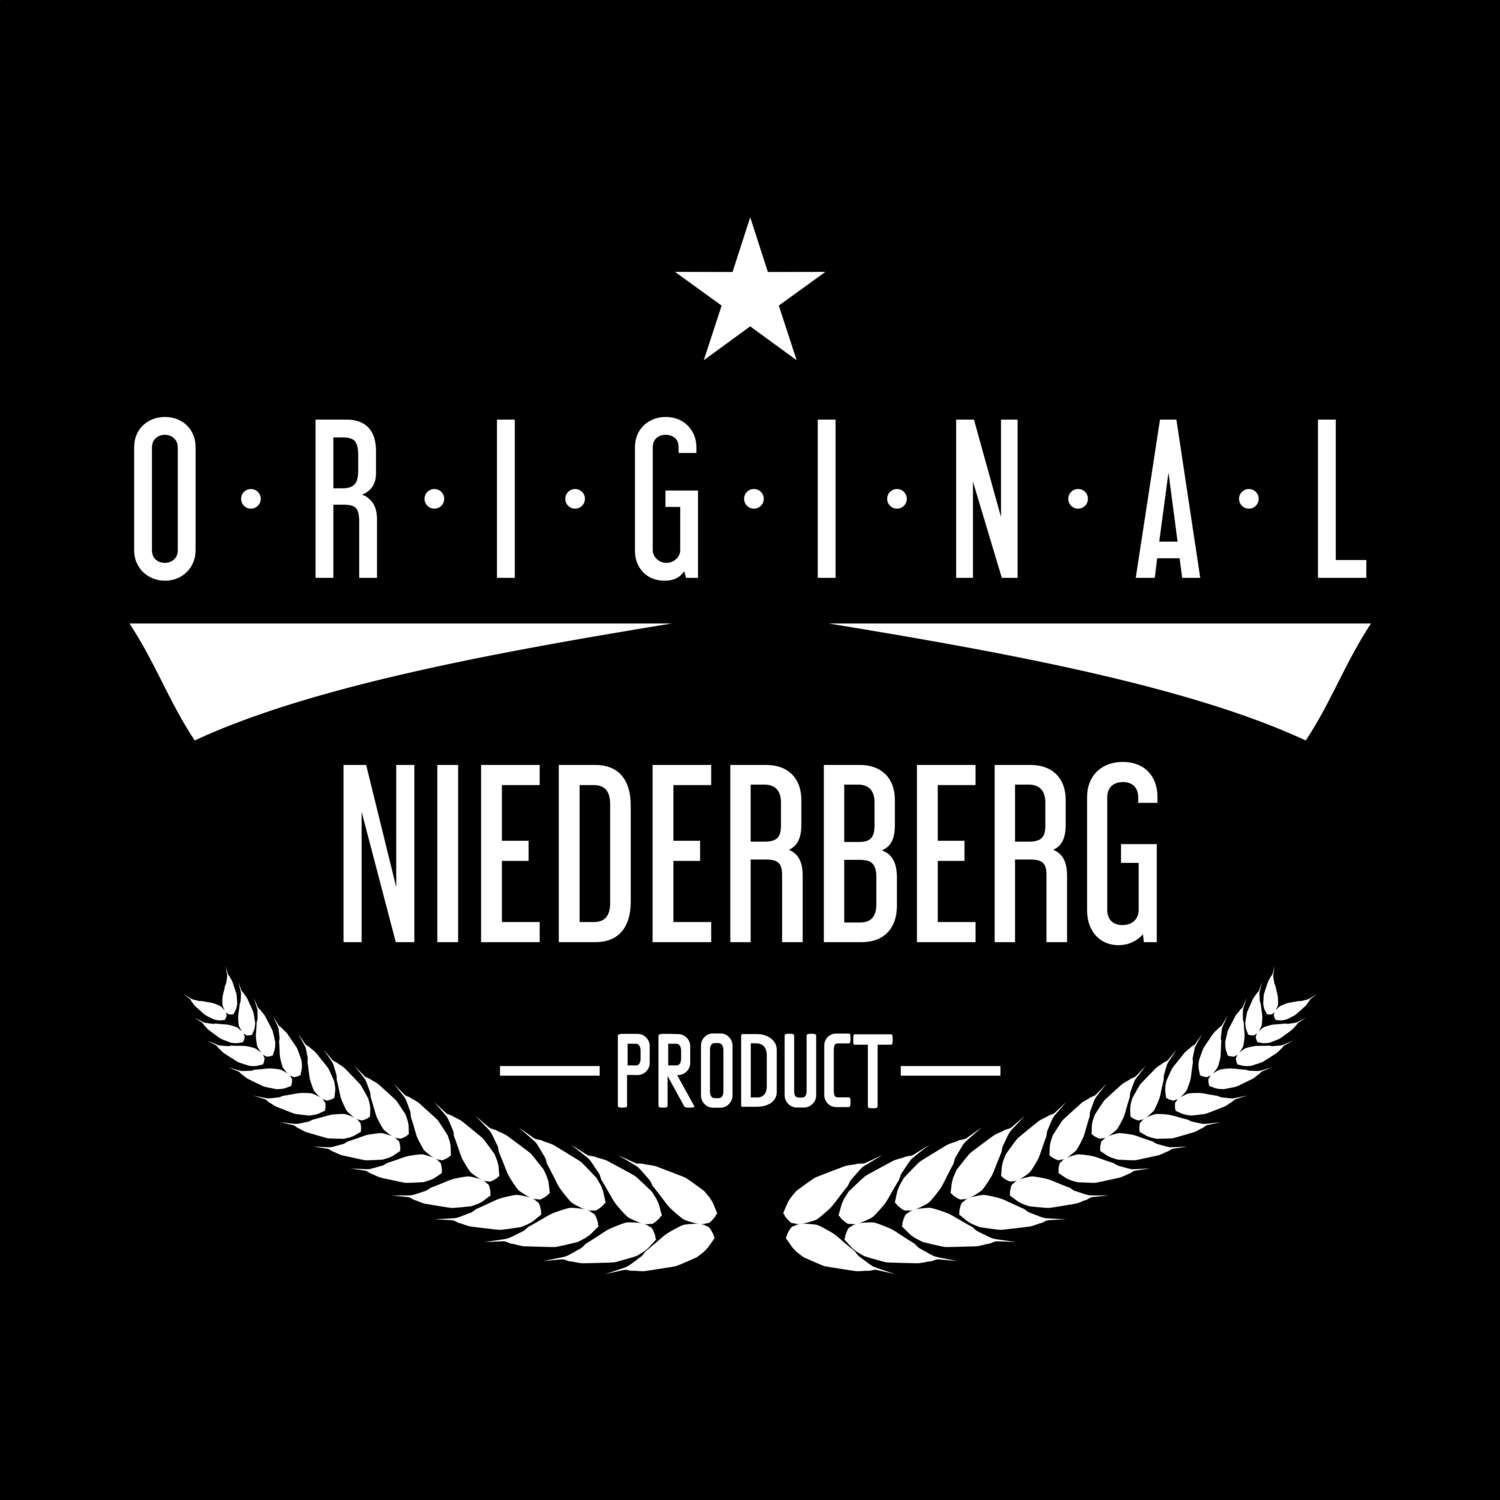 Niederberg T-Shirt »Original Product«